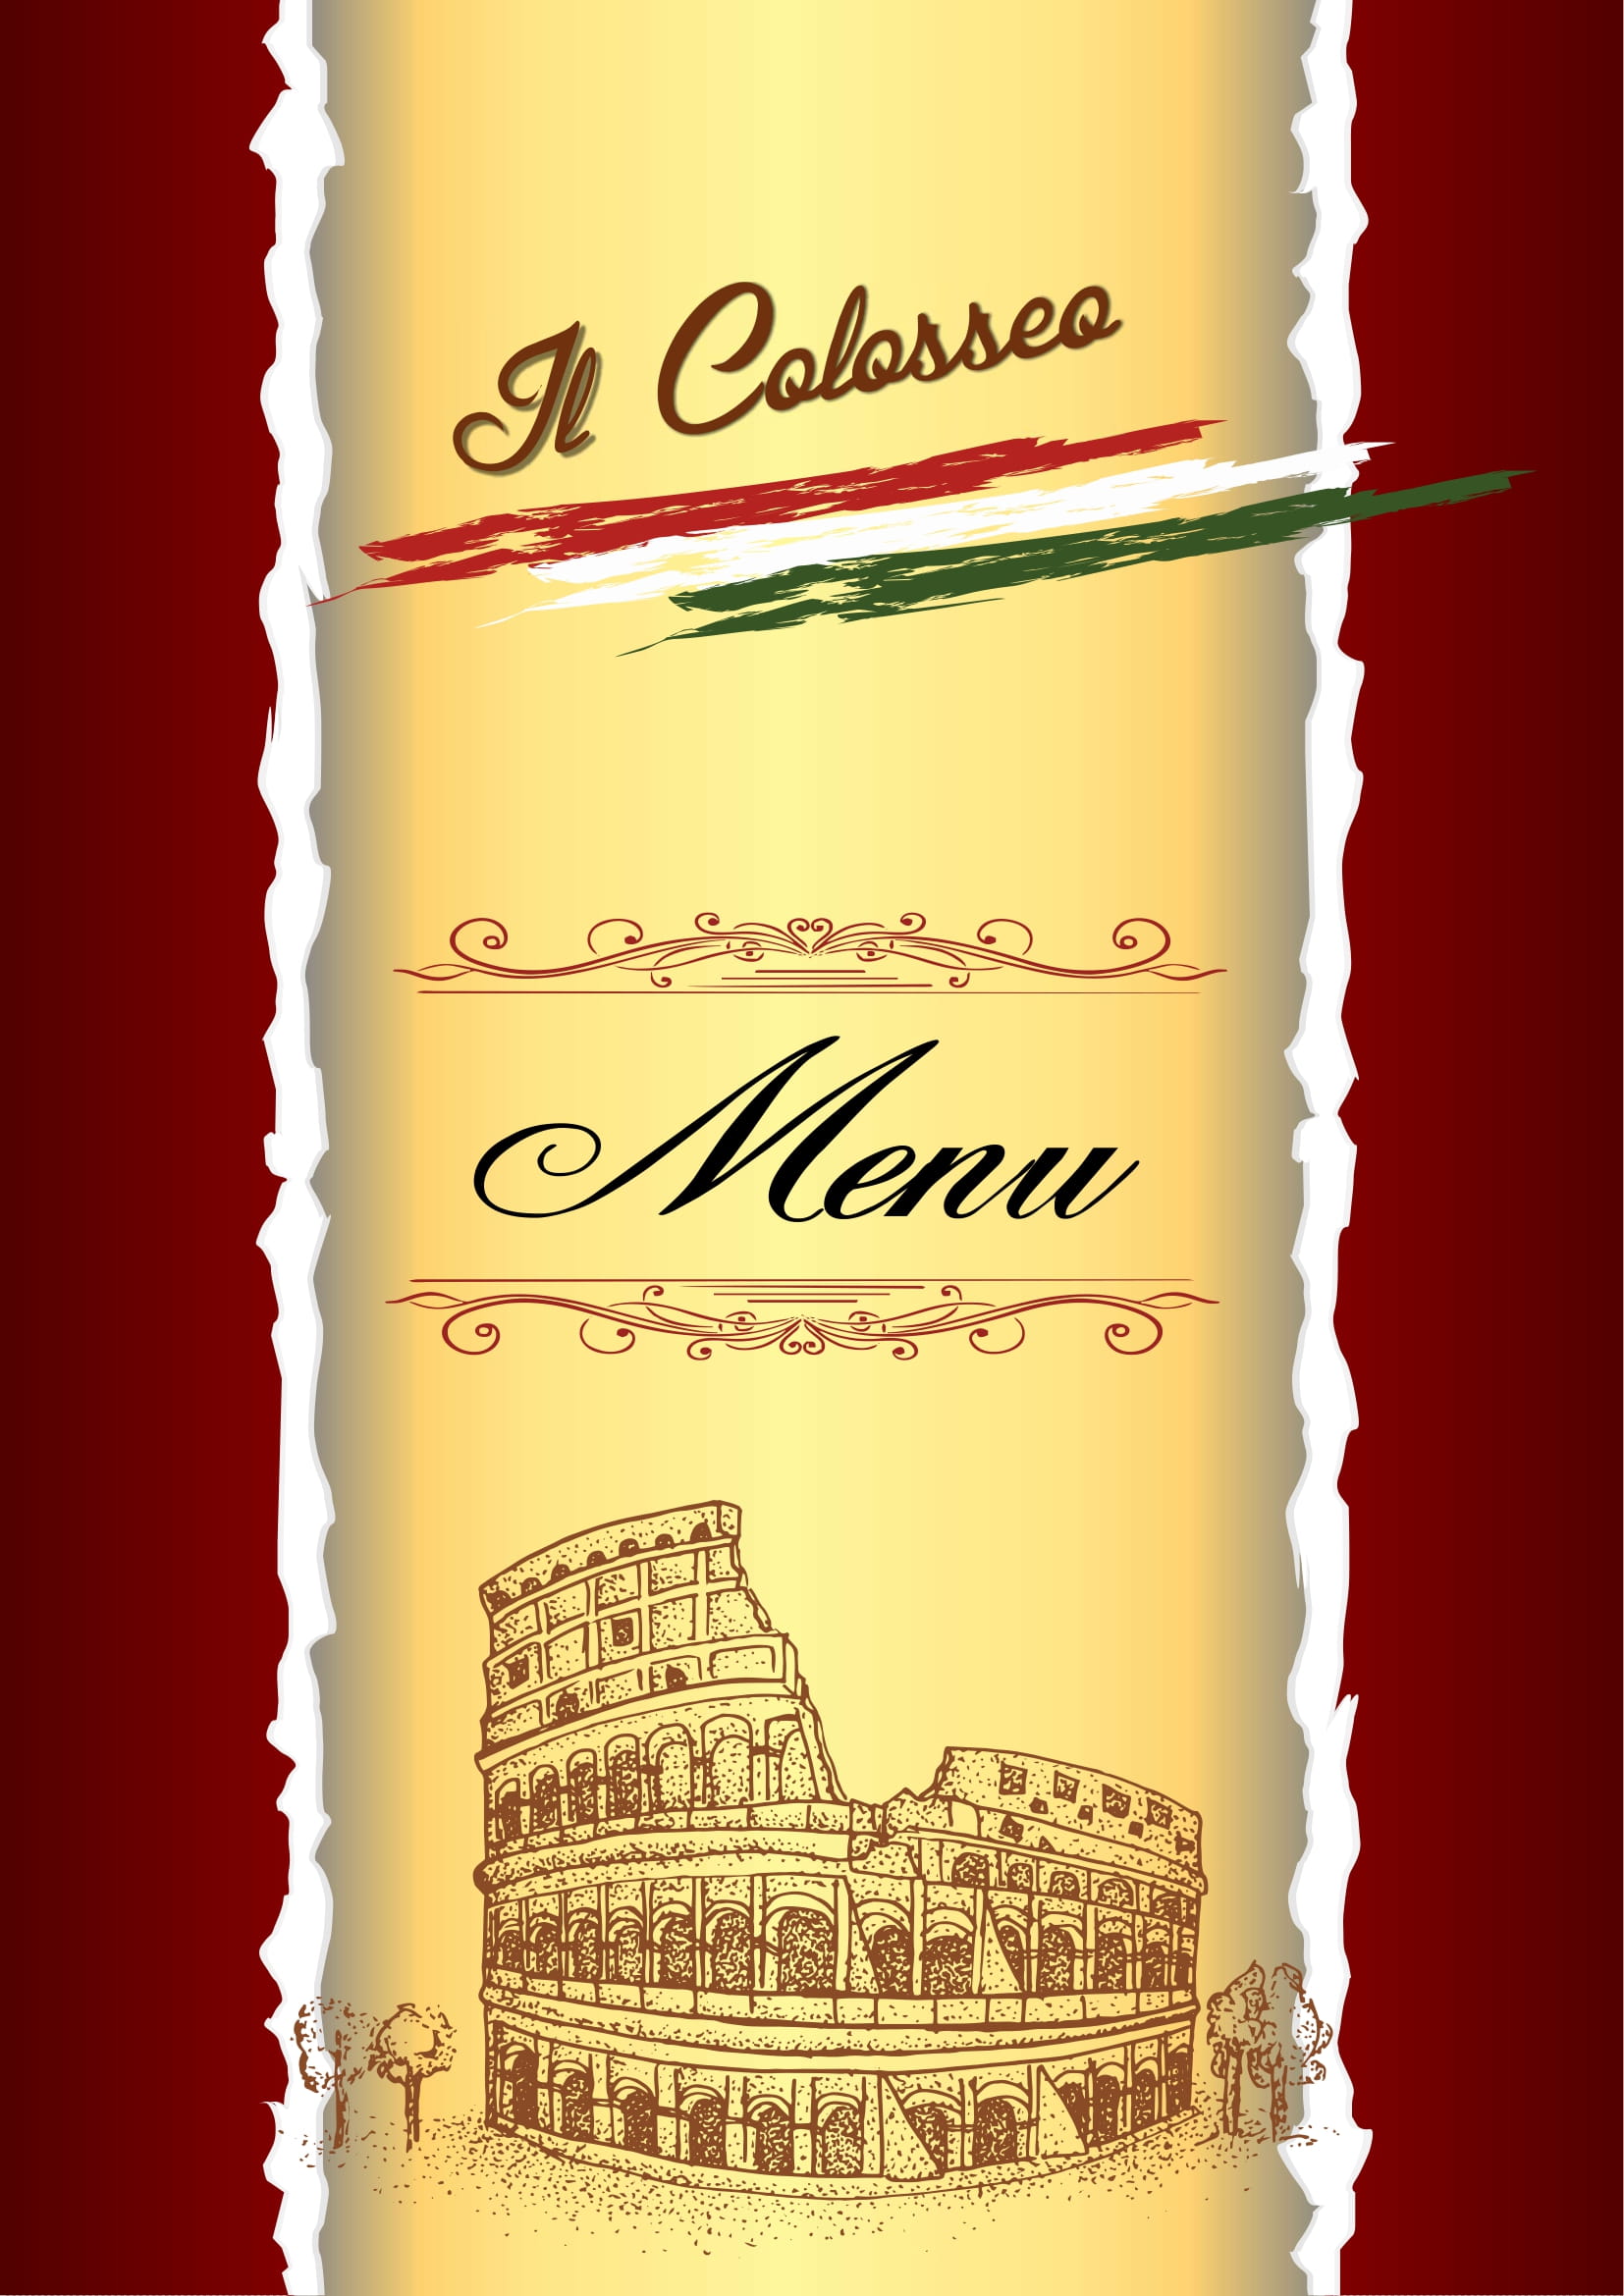 Il Colosseo im Hotel am Schloß Treptow Köpenick 12555 Berlin Grünauer Str Ristorante und Pizzeria Italienisches Restaurant italienisch küche Pizza 210